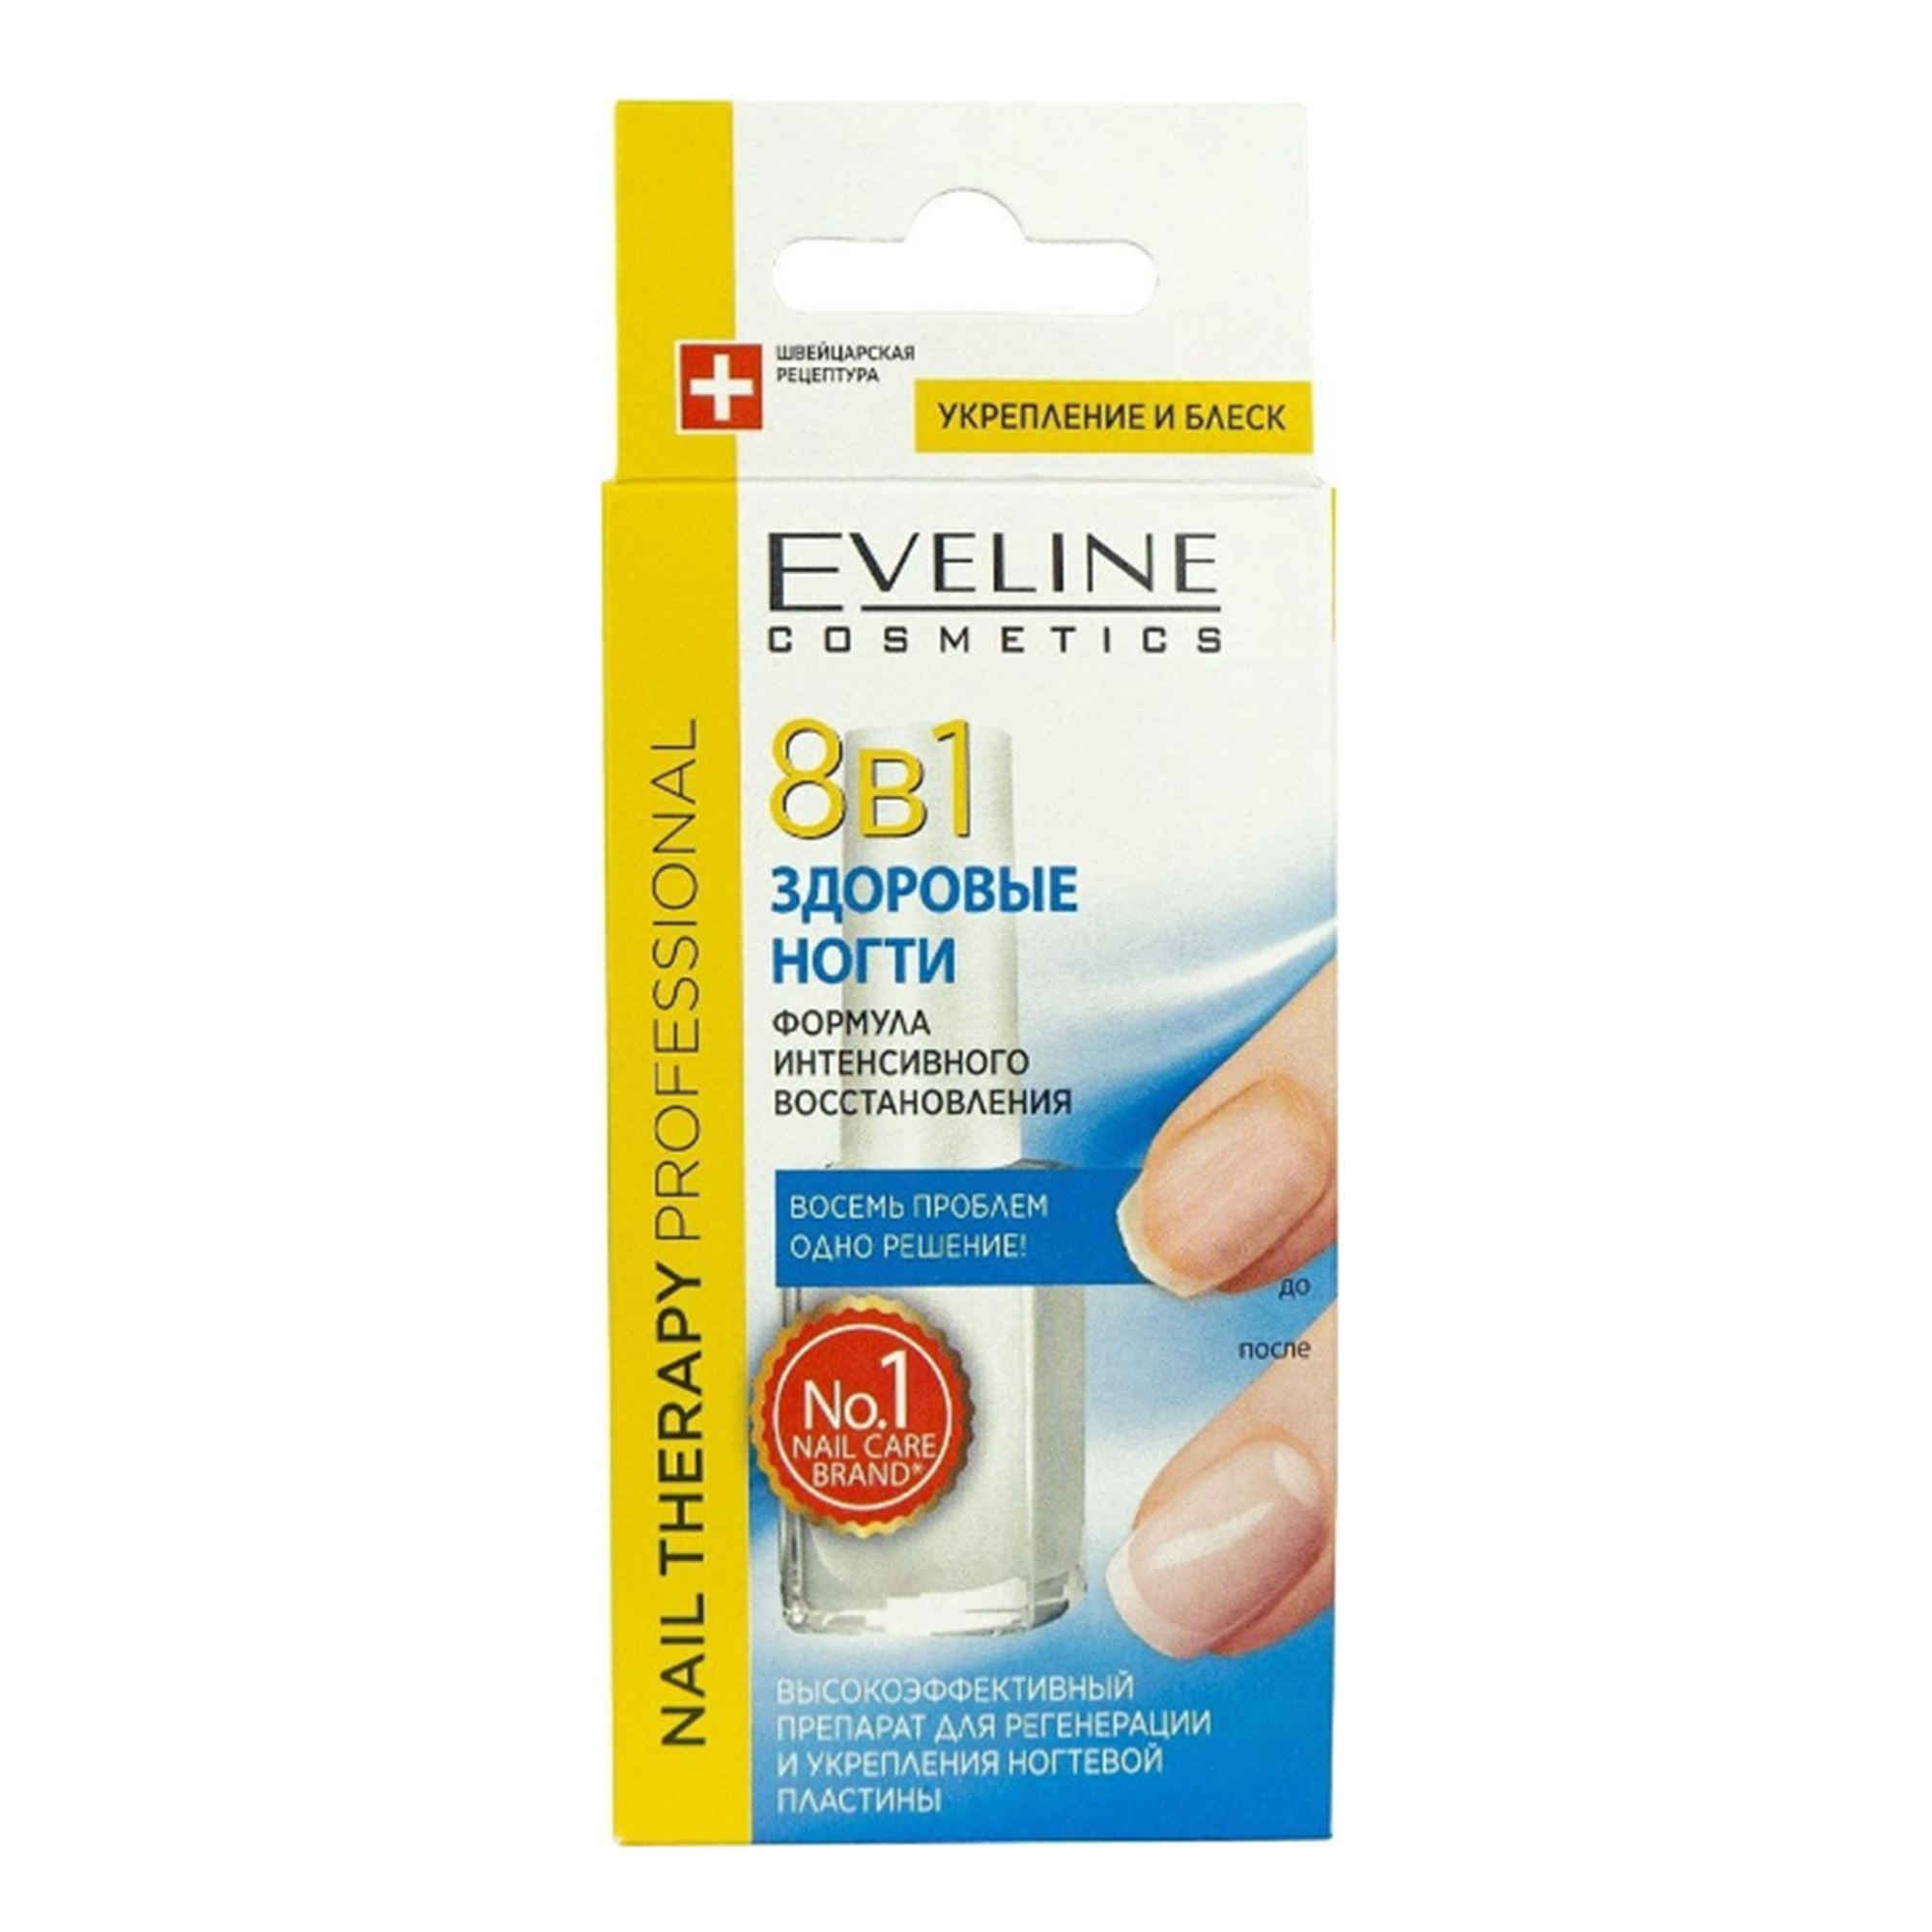 Высокоэффективный Препарат для Регенерации и Укрепления ногтевой пластины Eveline Здоровые ногти 8 в 1 12 мл - фото 1